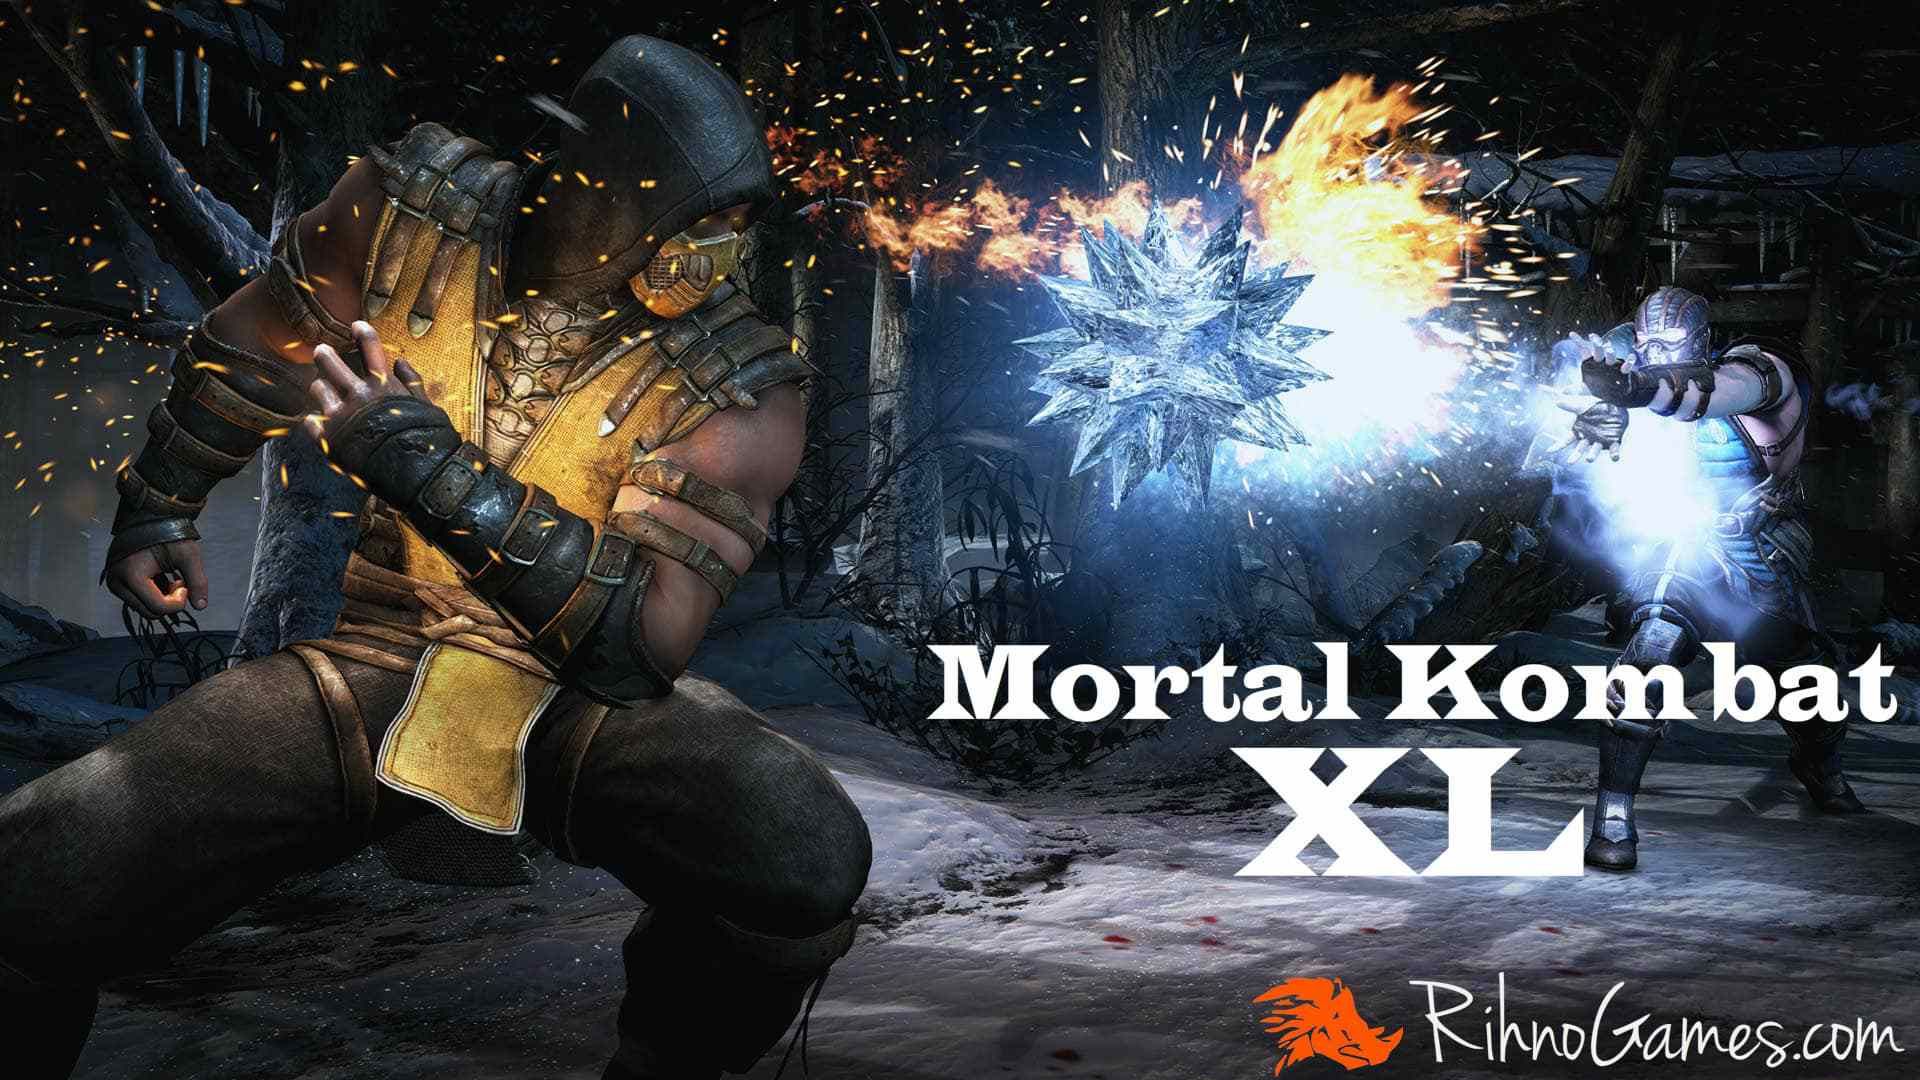 Mortal kombat 5 pc download ocean of games